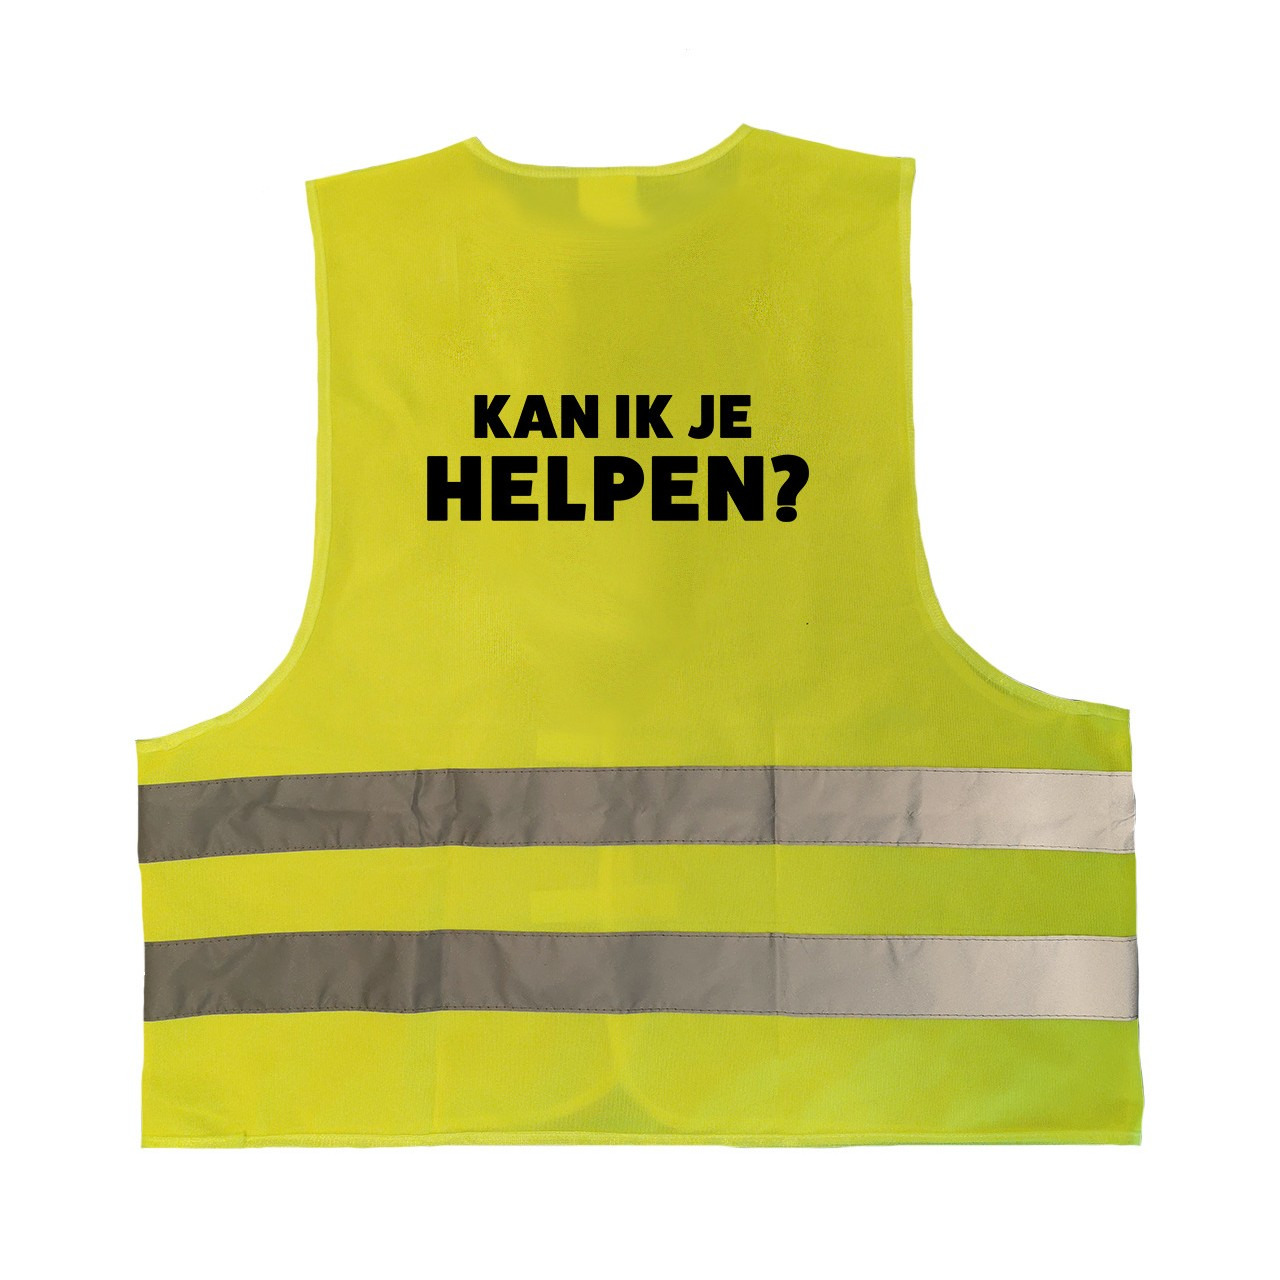 Kan ik je helpen personeel vestje-hesje geel met reflecterende strepen voor volwassenen